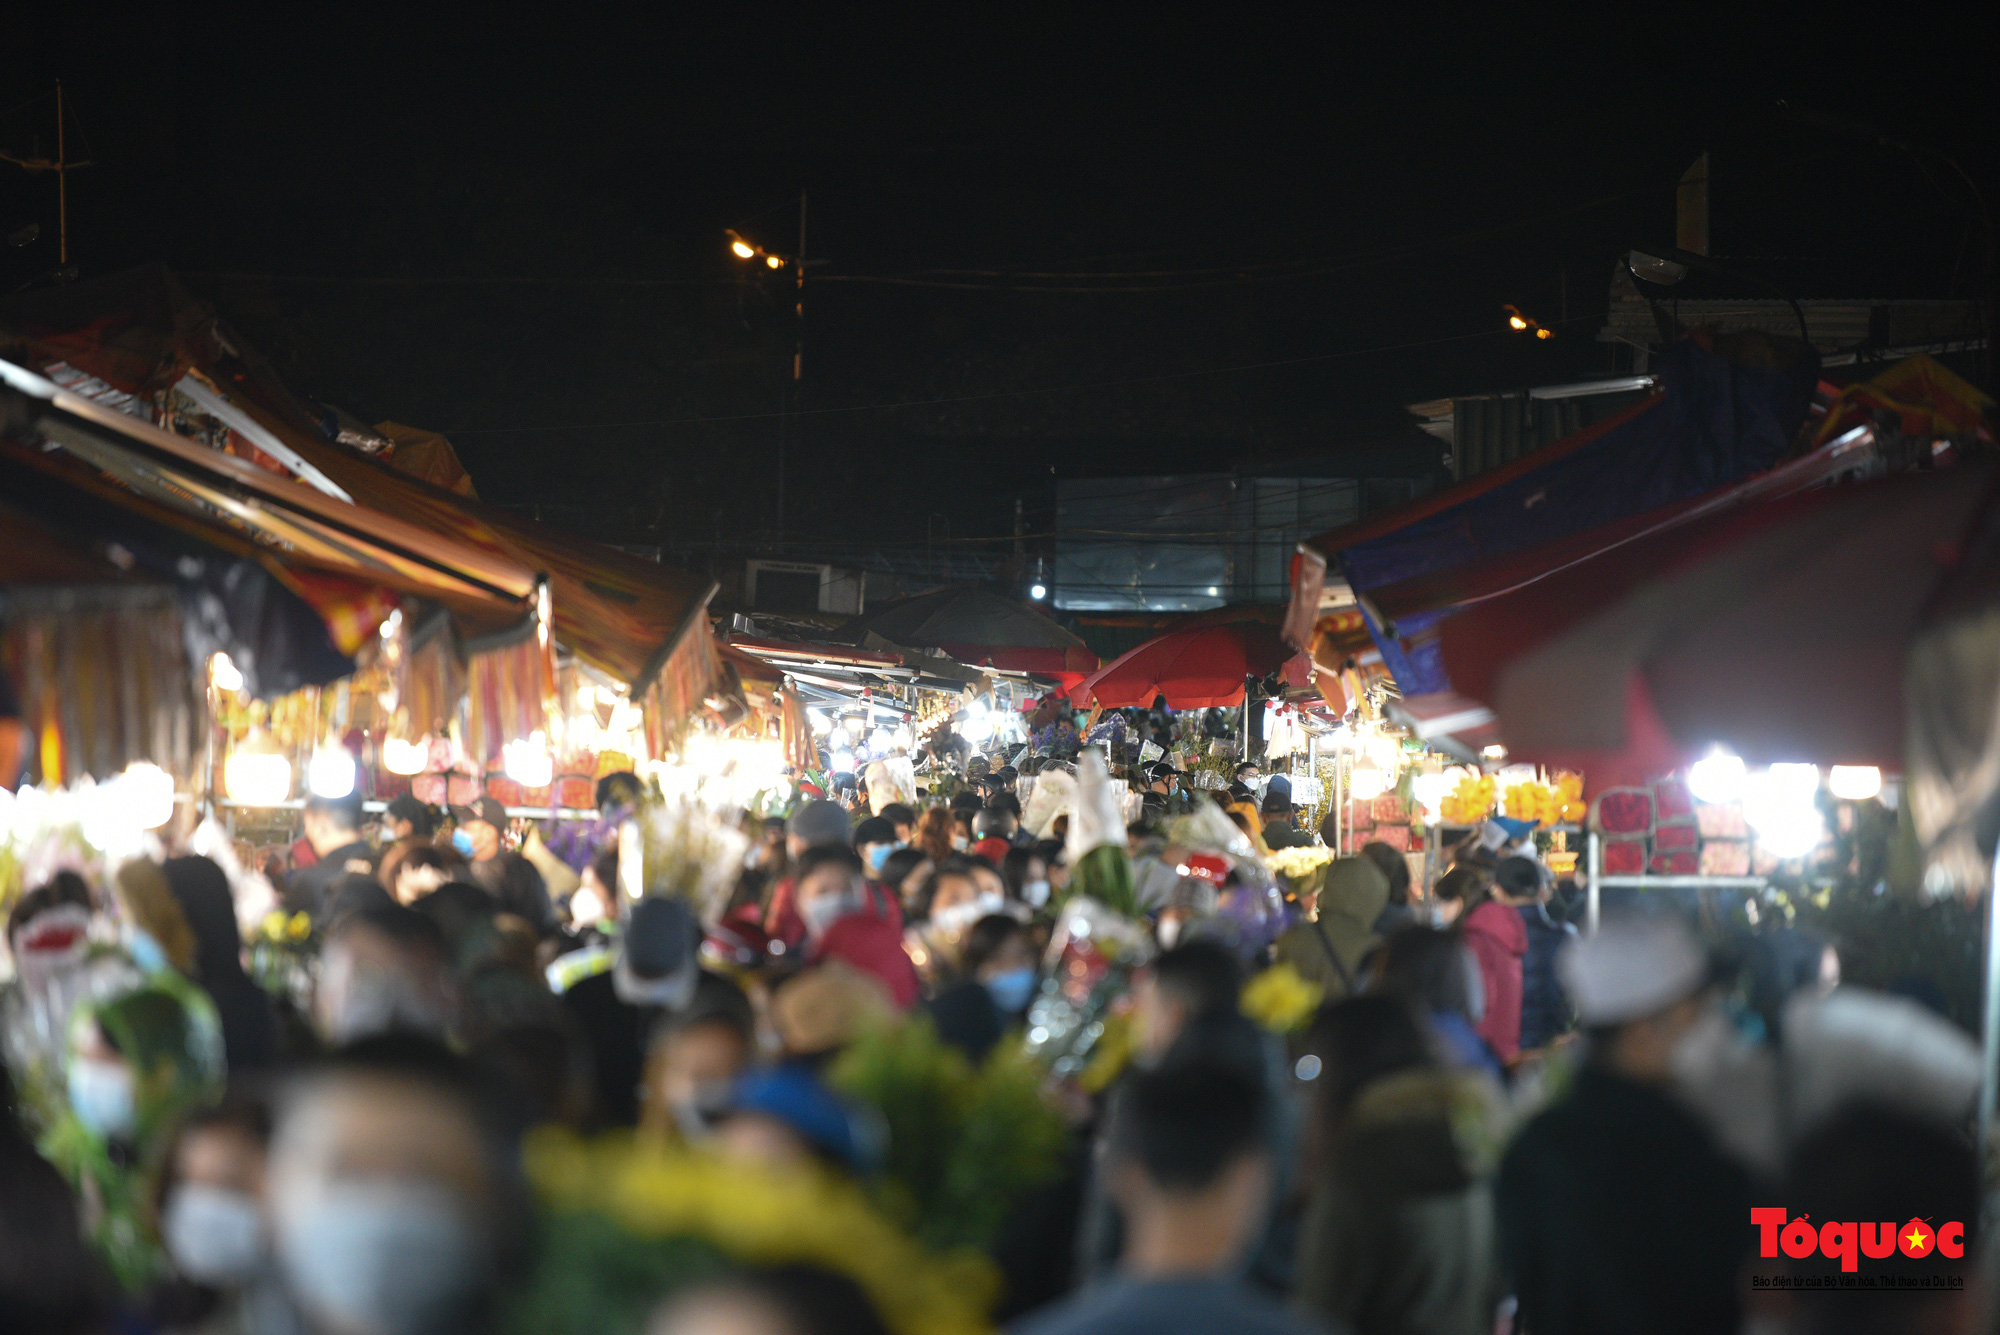 Chợ hoa đêm lớn nhất Hà Nội rộn ràng ngày cận Tết - Ảnh 10.